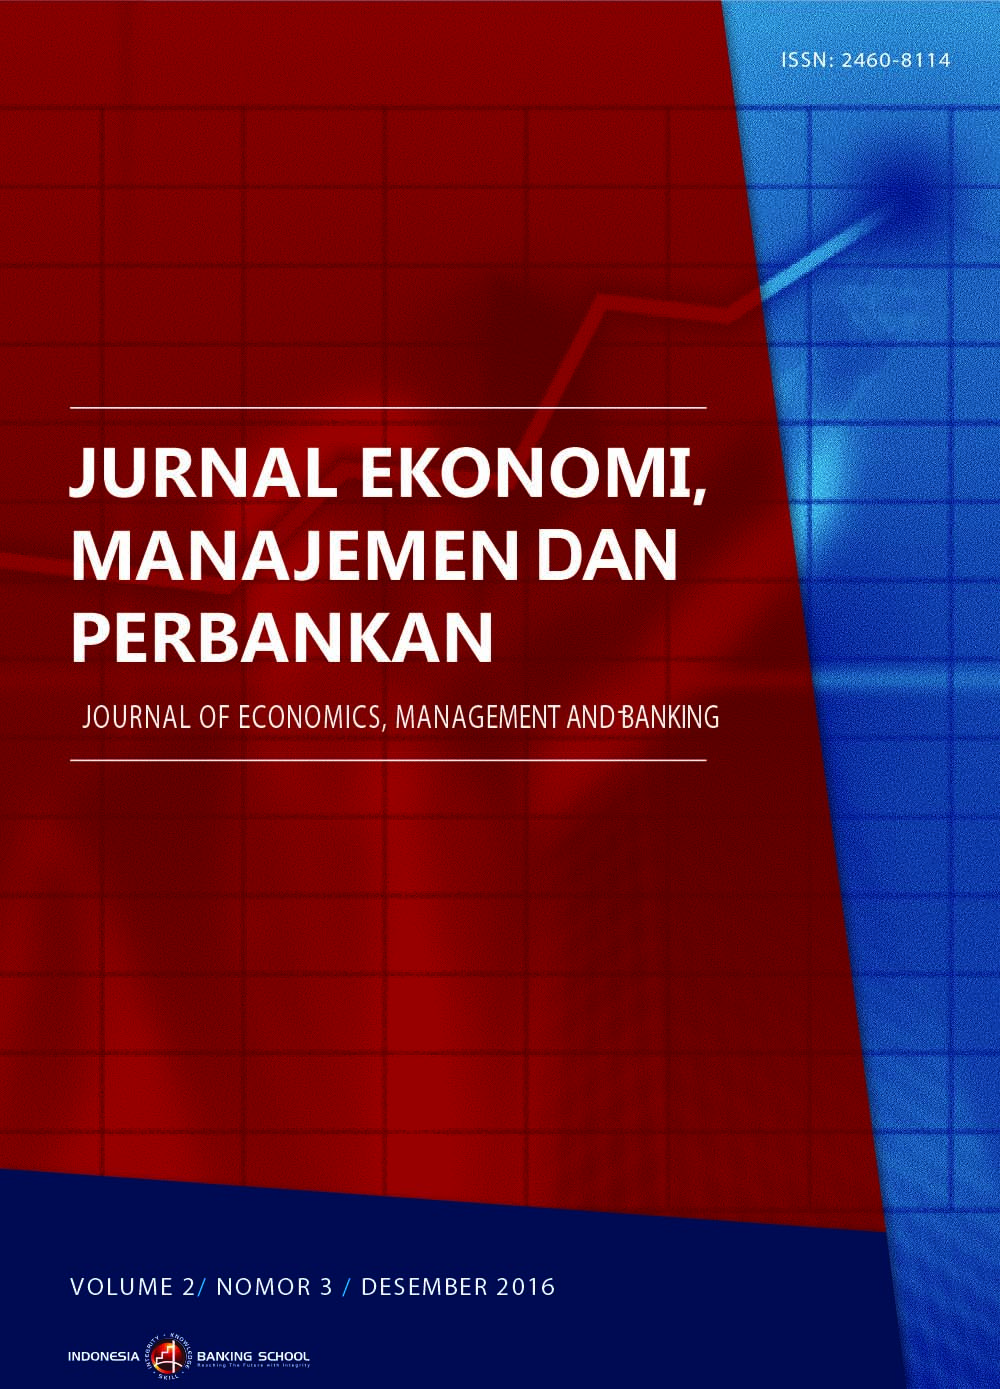 					View Vol. 2 No. 3 (2016): Jurnal Ekonomi, Manajemen dan Perbankan (Journal of Economics, Management, and Banking), Volume 2 No. 3, Desember 2016
				